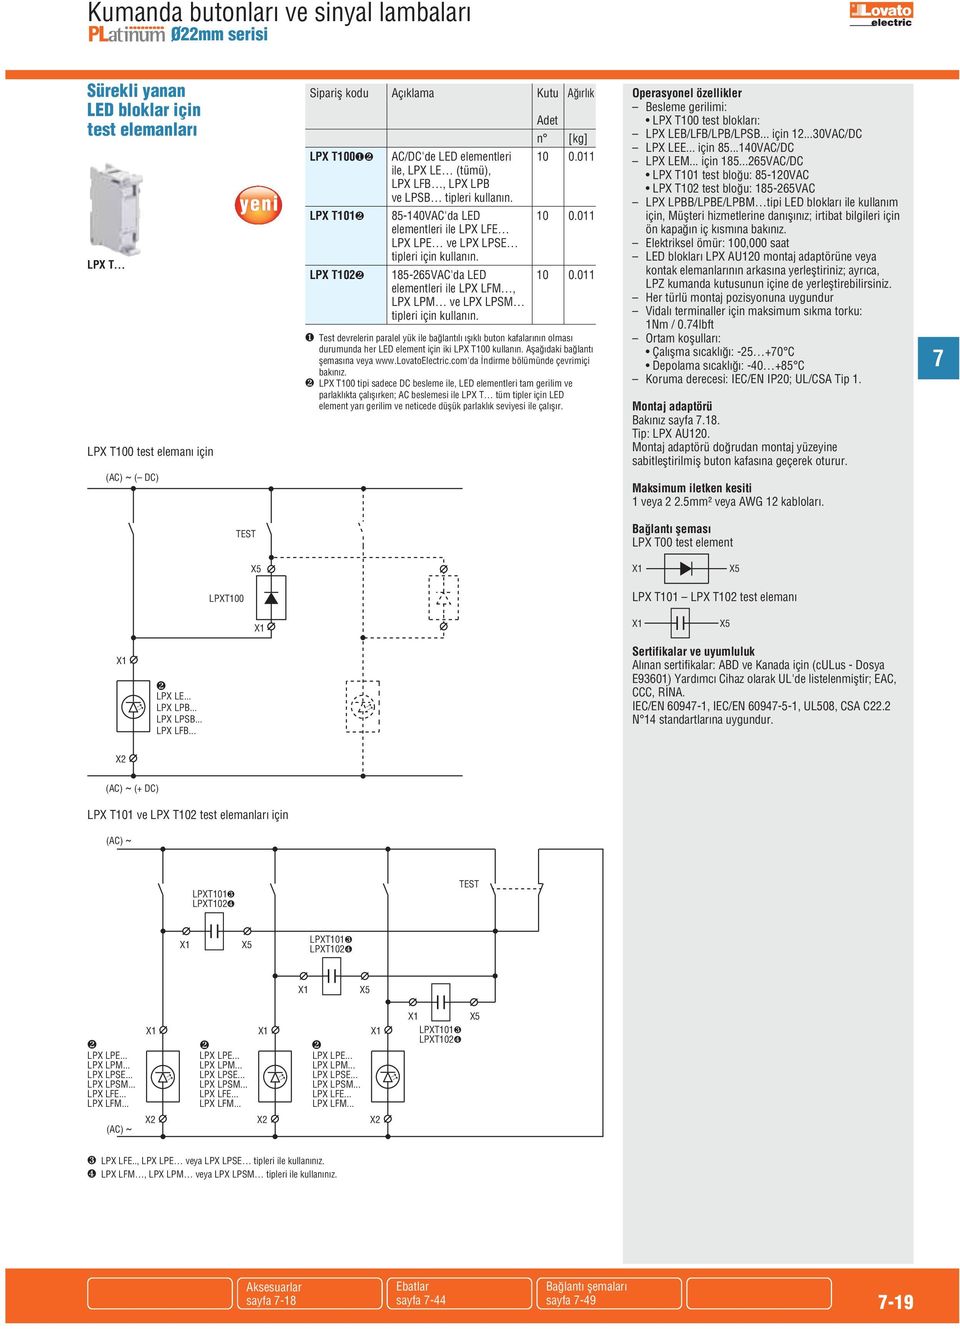 LPX T102❷ 185-265VAC'da LED 10 0.011 elementleri ile LPX LFM, LPX LPM ve LPX LPSM tipleri için kullanın.